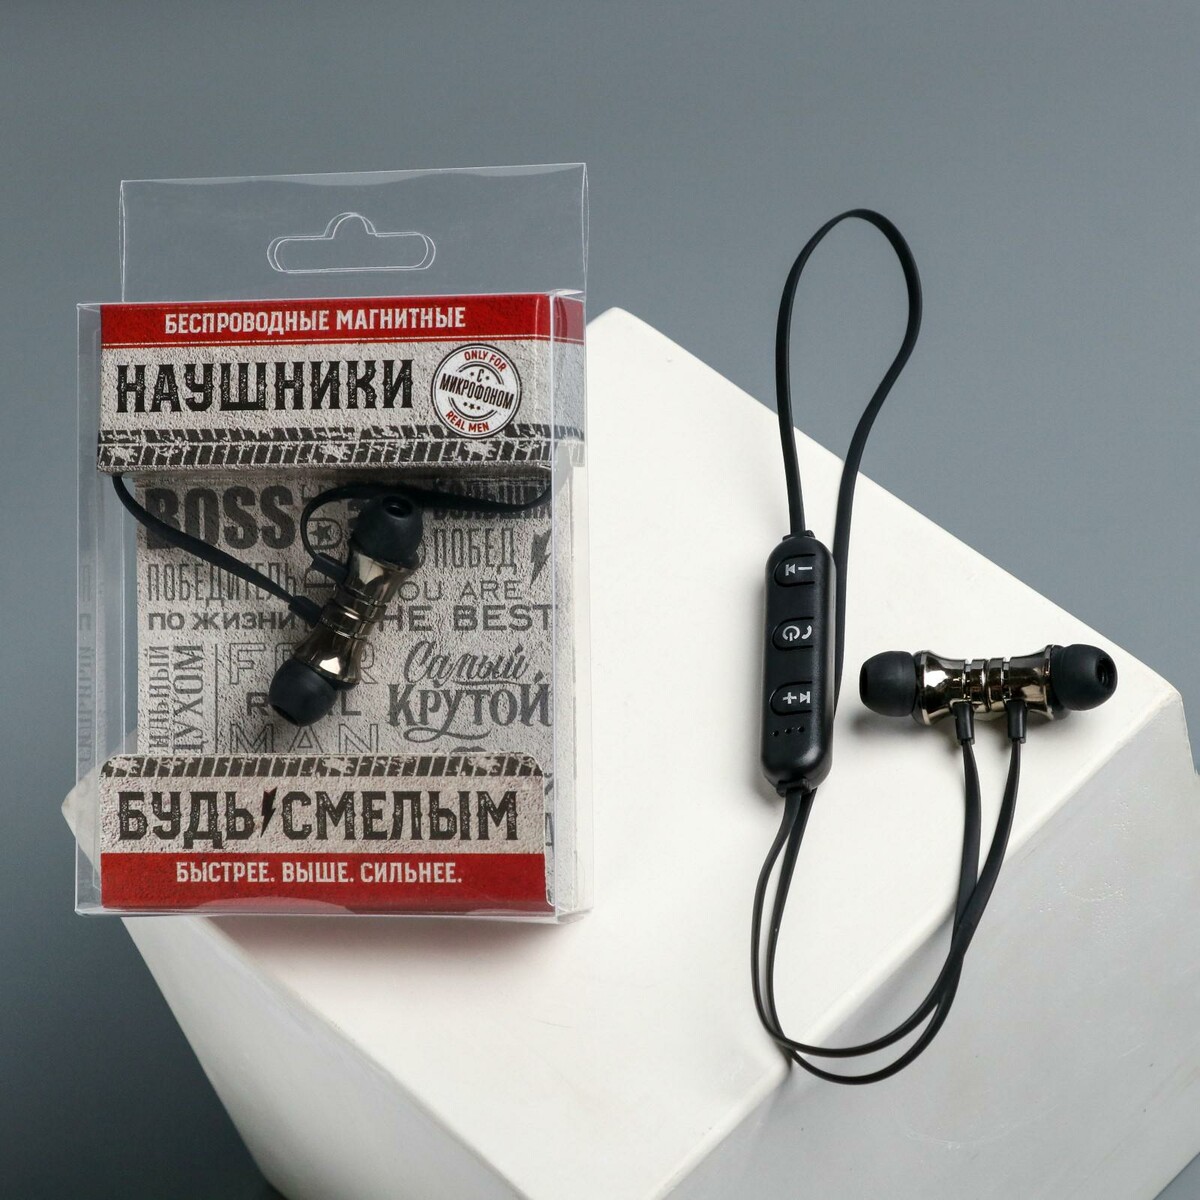 Беспроводные магнитные наушники с микрофоном беспроводные магнитные наушники с микрофоном